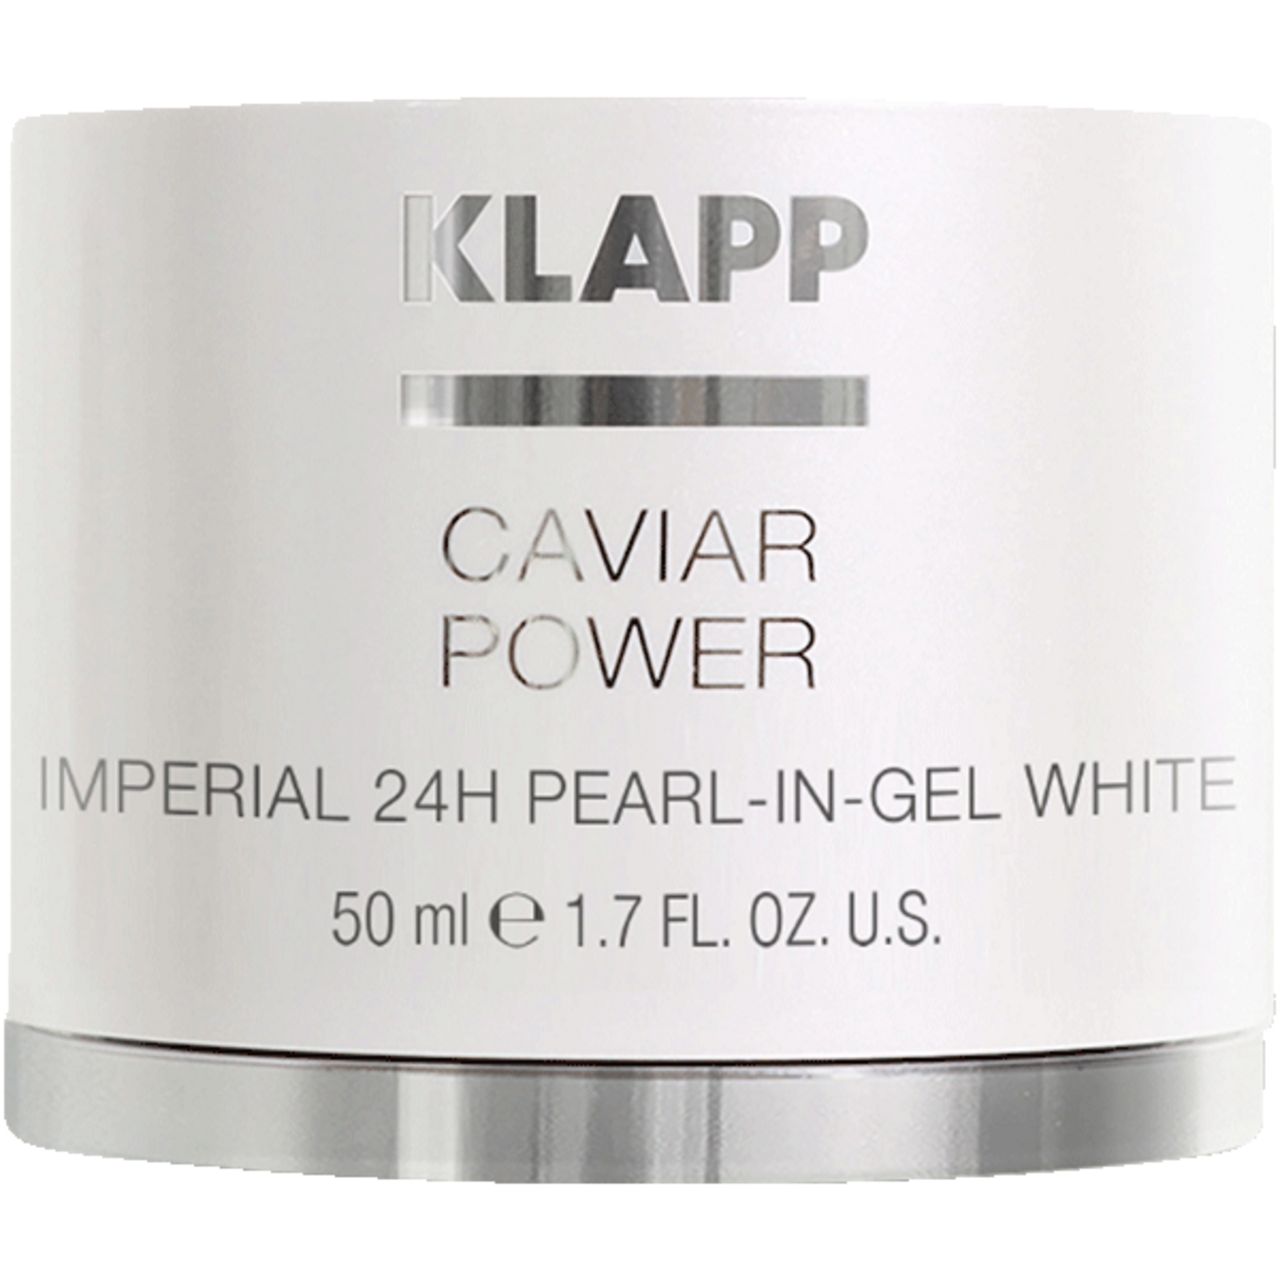 Klapp, Caviar Power Imperial 24H Pearl-in-Gel White